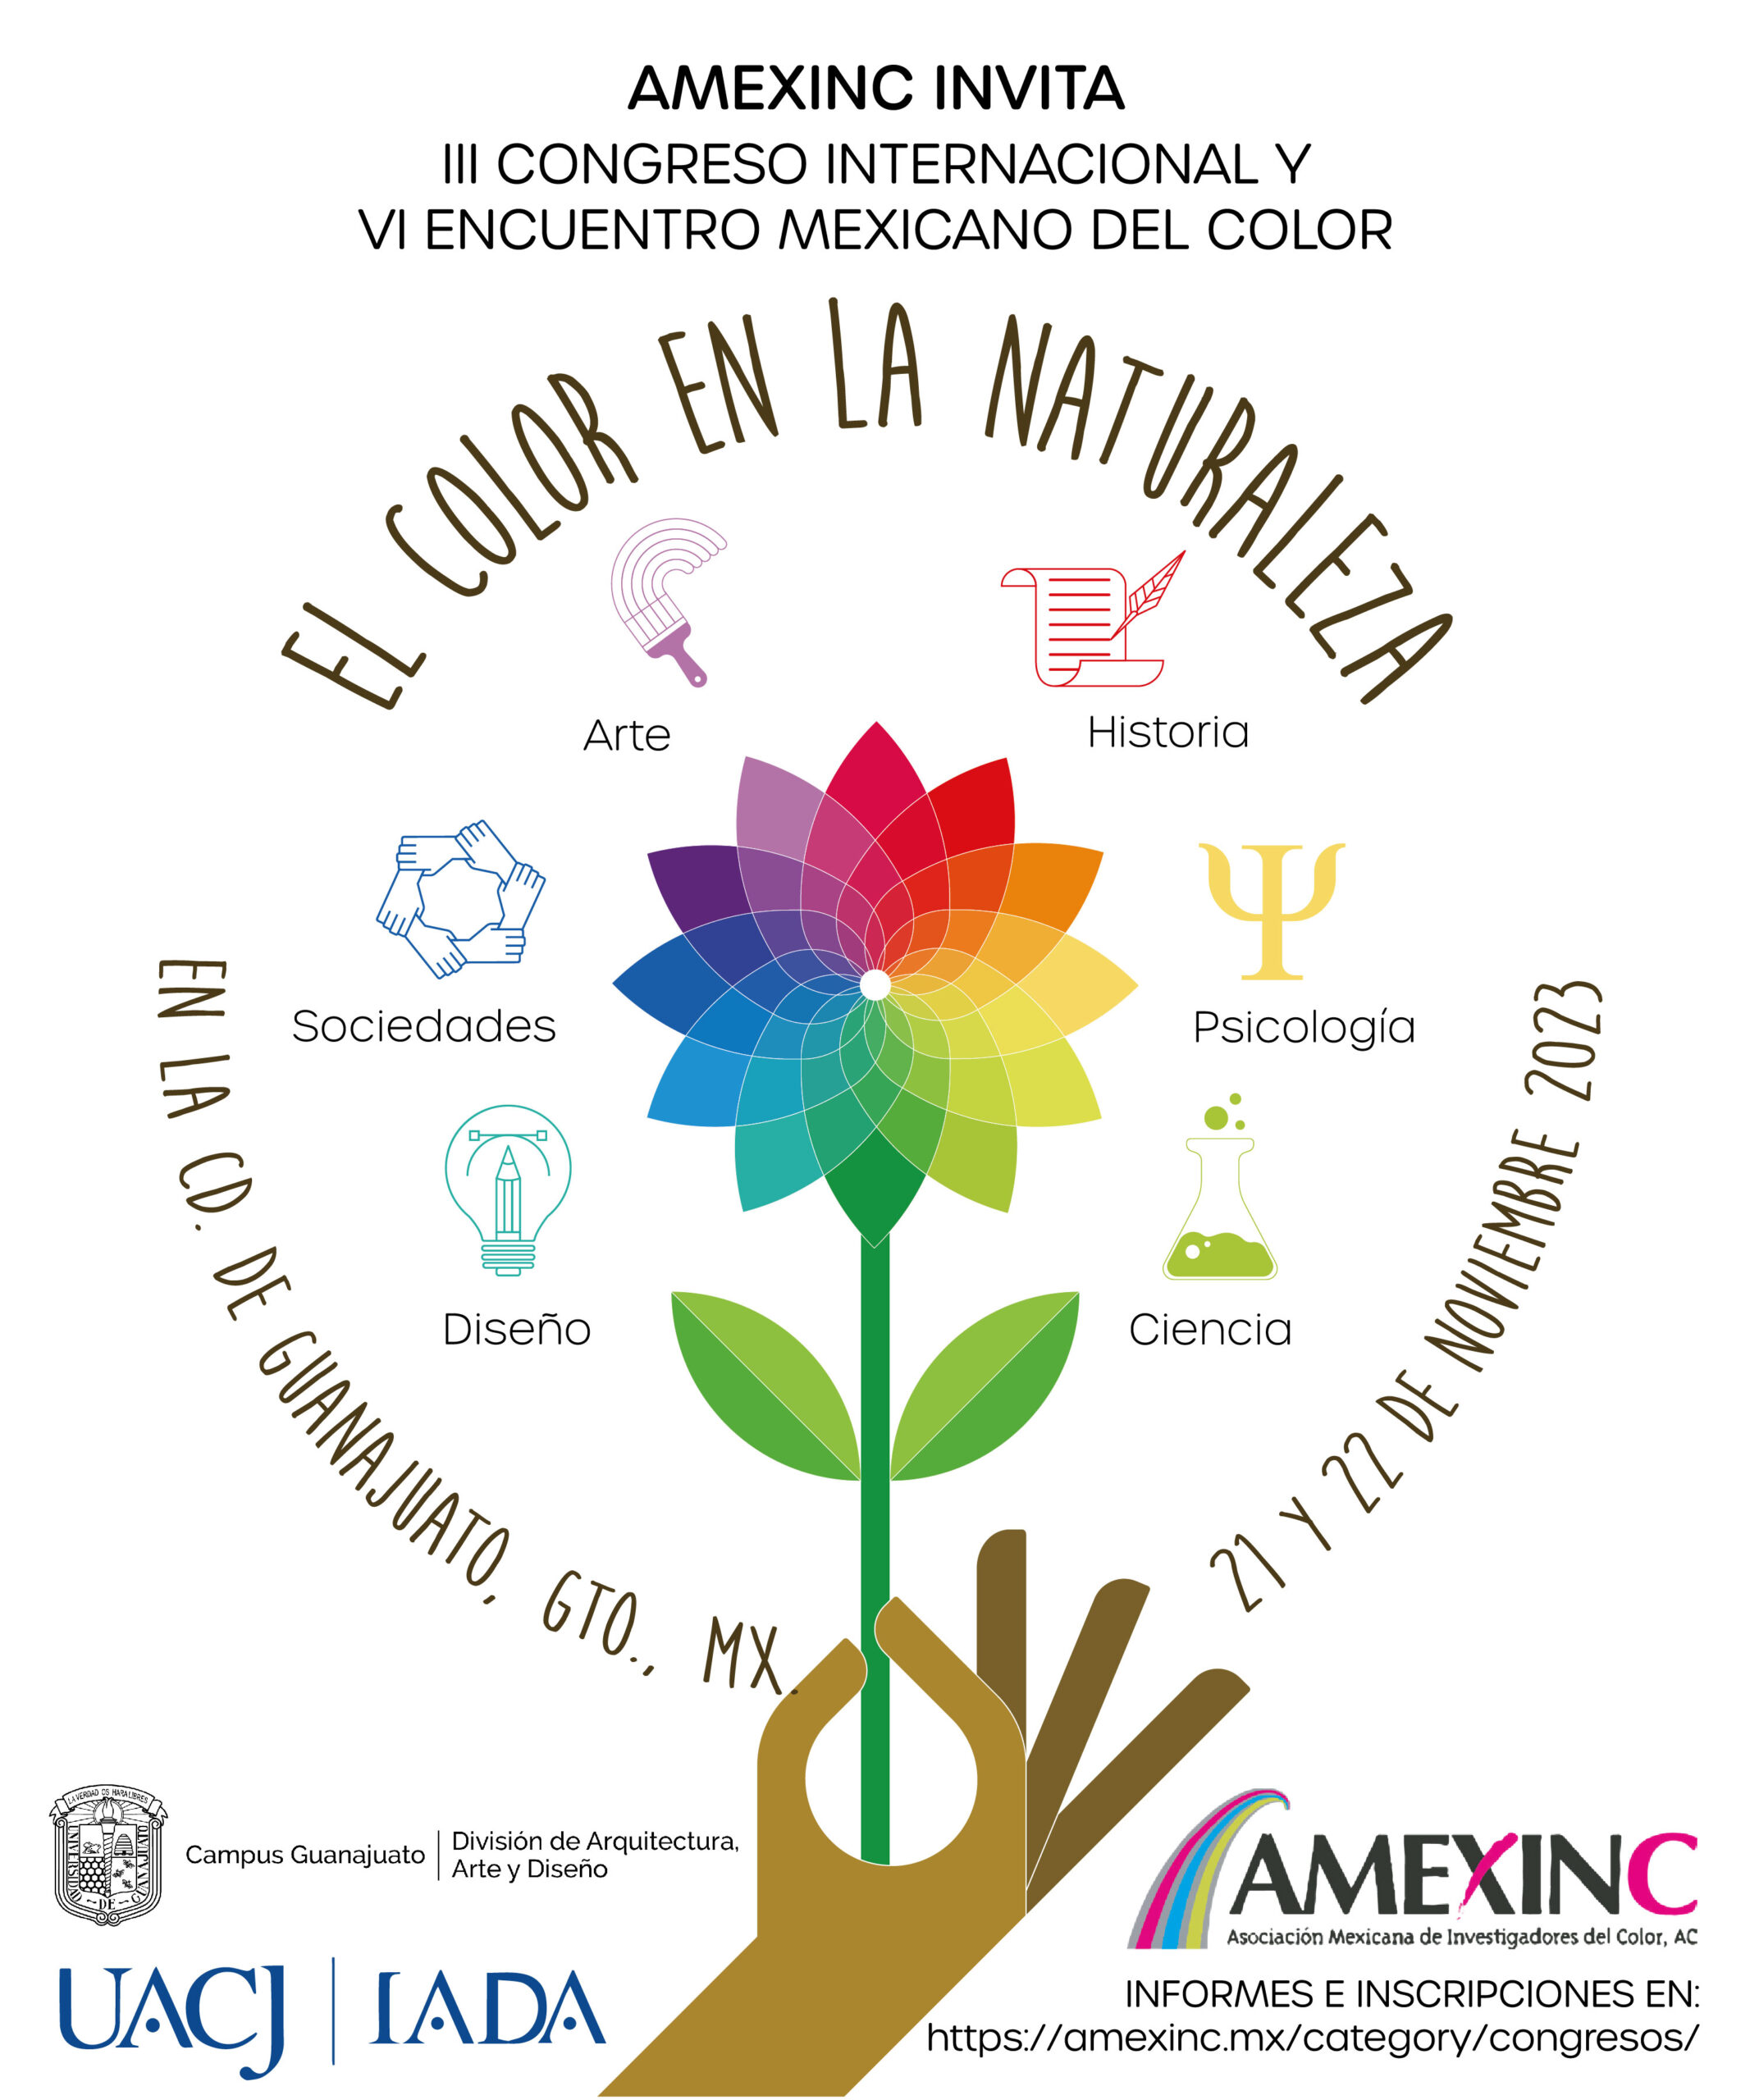 Amexinc agradece a la Universidad Autónoma de Ciudad Juárez y la Universidad de Guanajuato por ser nuestros anfitriones en este congreso